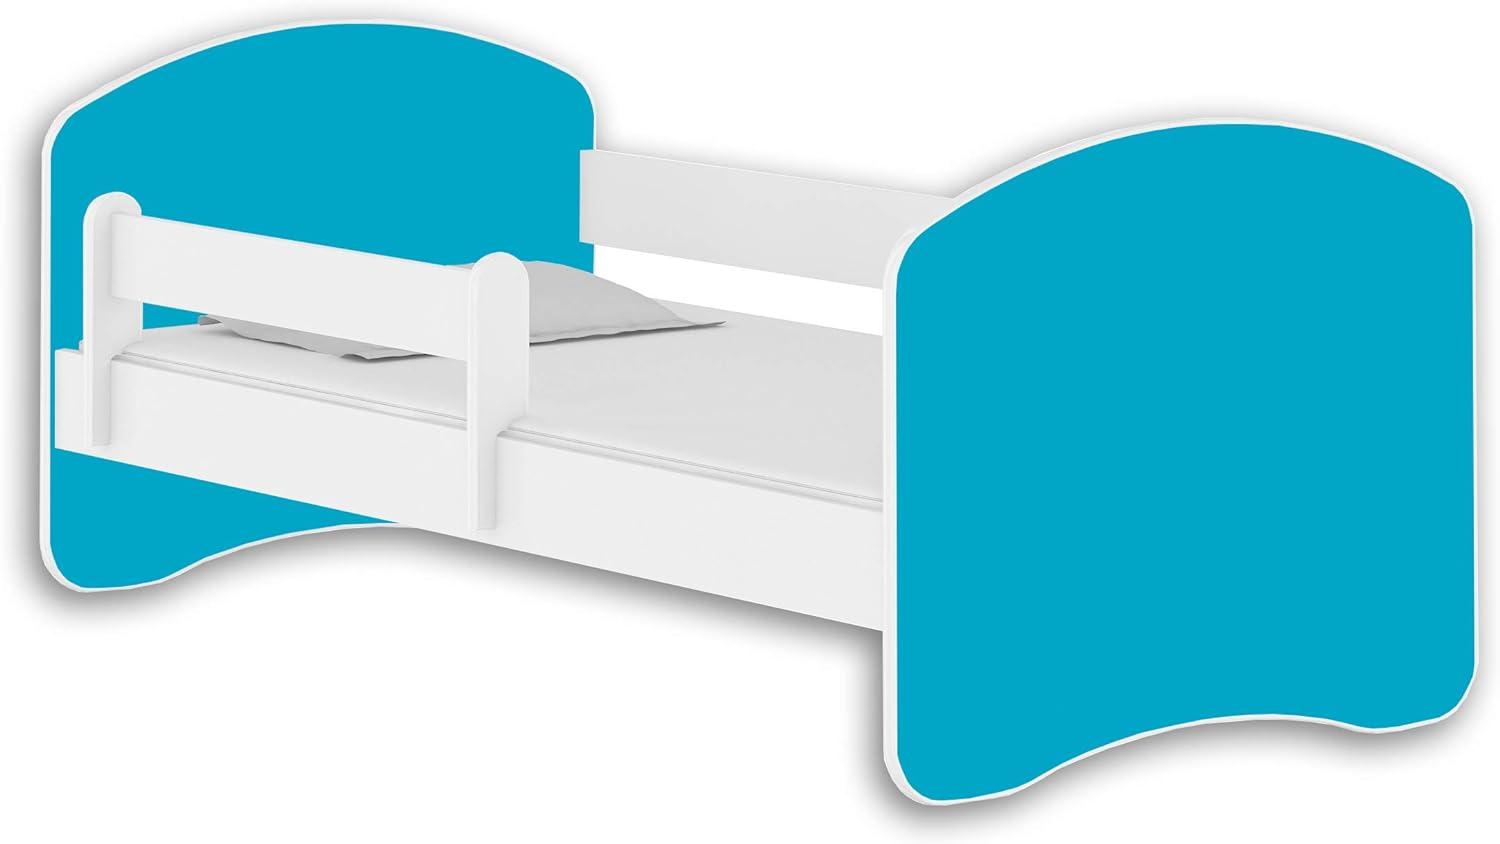 Jugendbett Kinderbett mit einer Schublade mit Rausfallschutz und Matratze Weiß ACMA II 140 160 180 (180x80 cm, Weiß - Blau) Bild 1